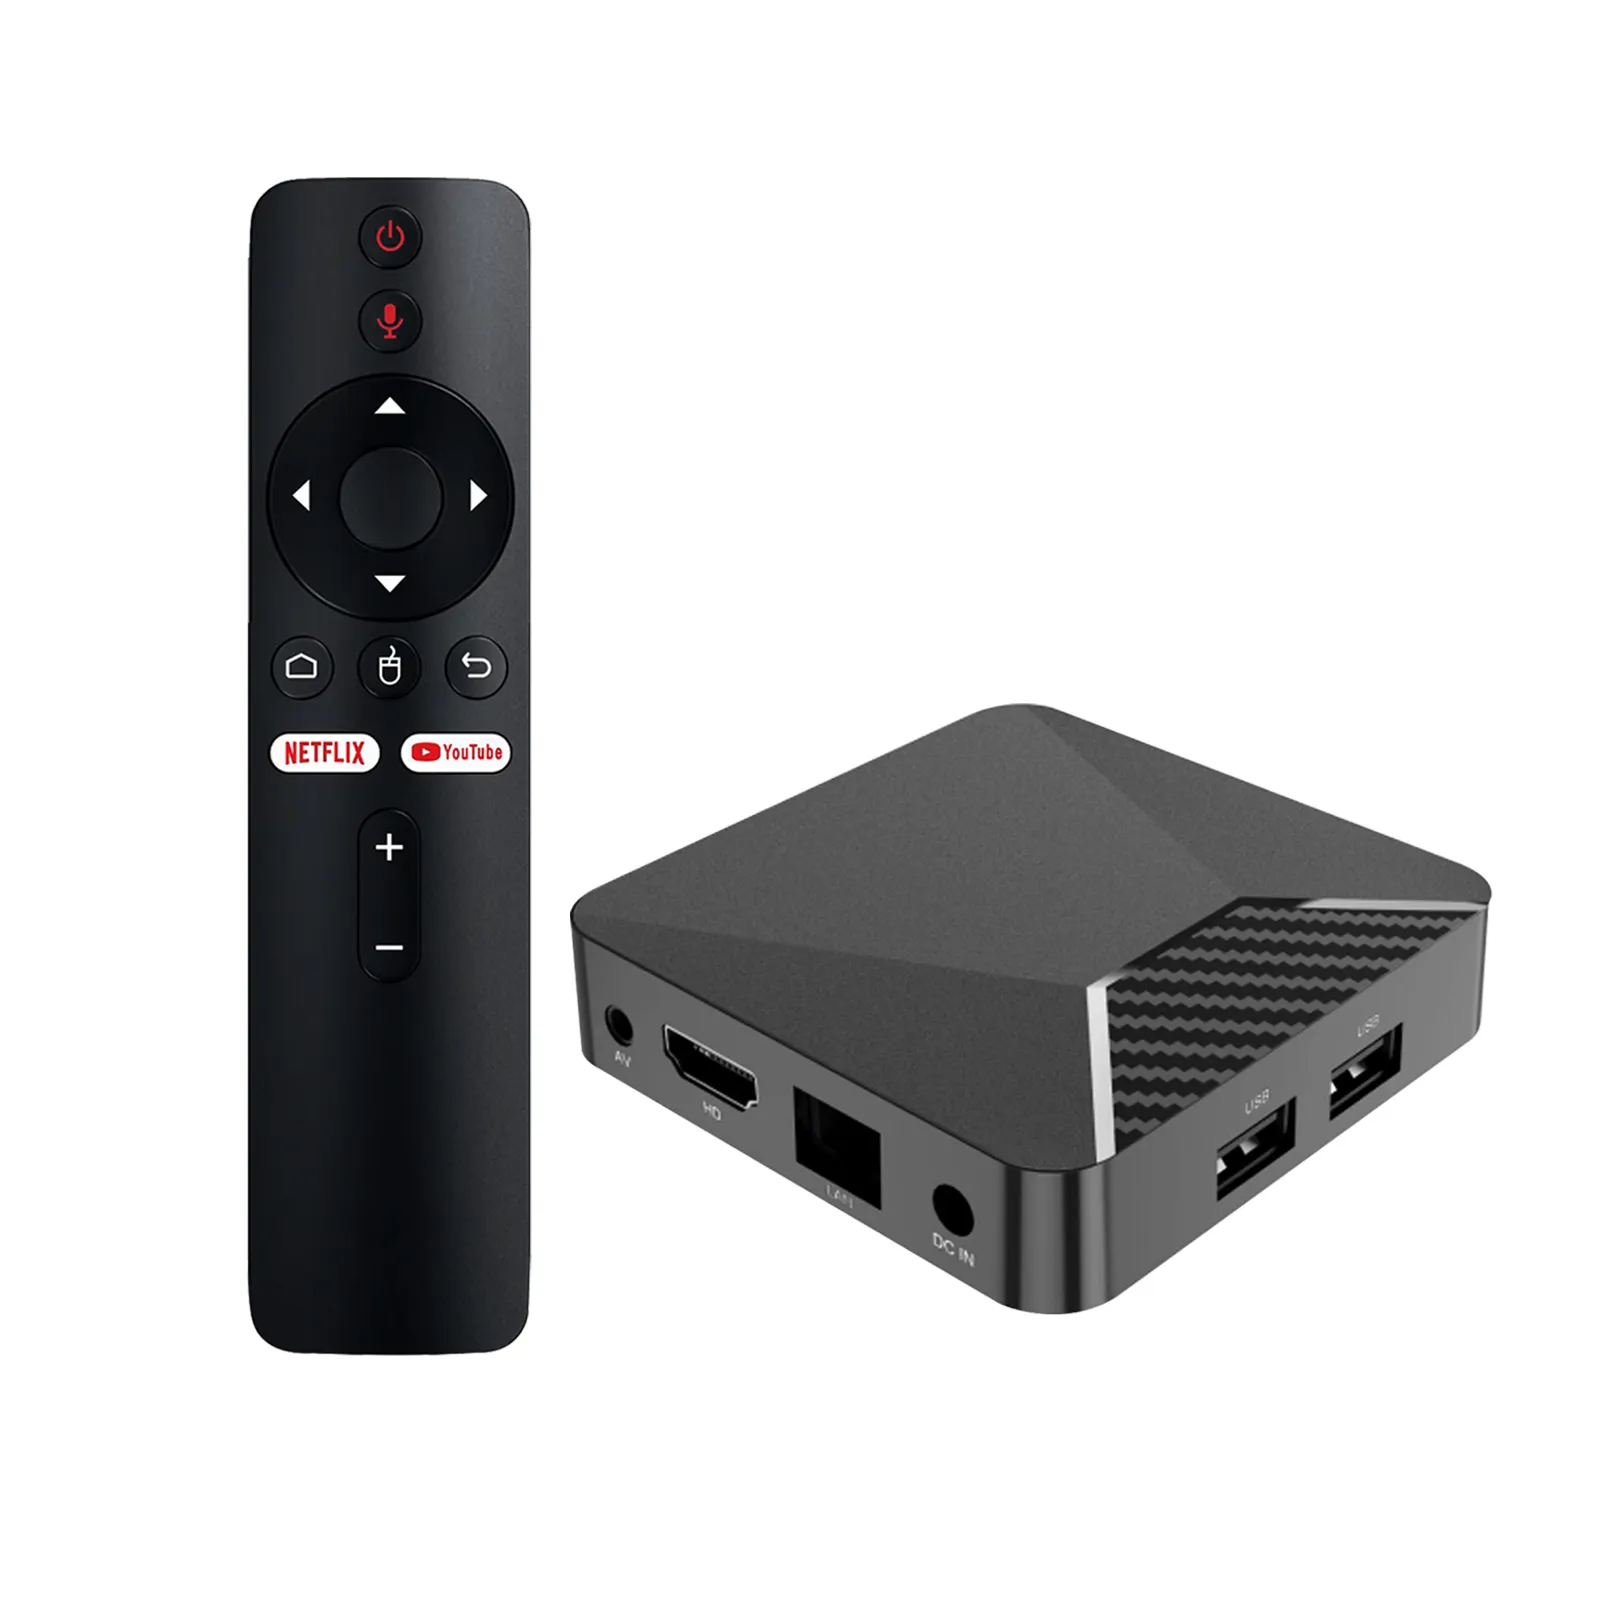 Ndroid-caja de televisión inteligente, dispositivo de 5 Pmmm9090909090mlogic 905W2 nndroid 11 Tox Ox i2.4 G 5 UAL IFI 90T OTE ememote OTE